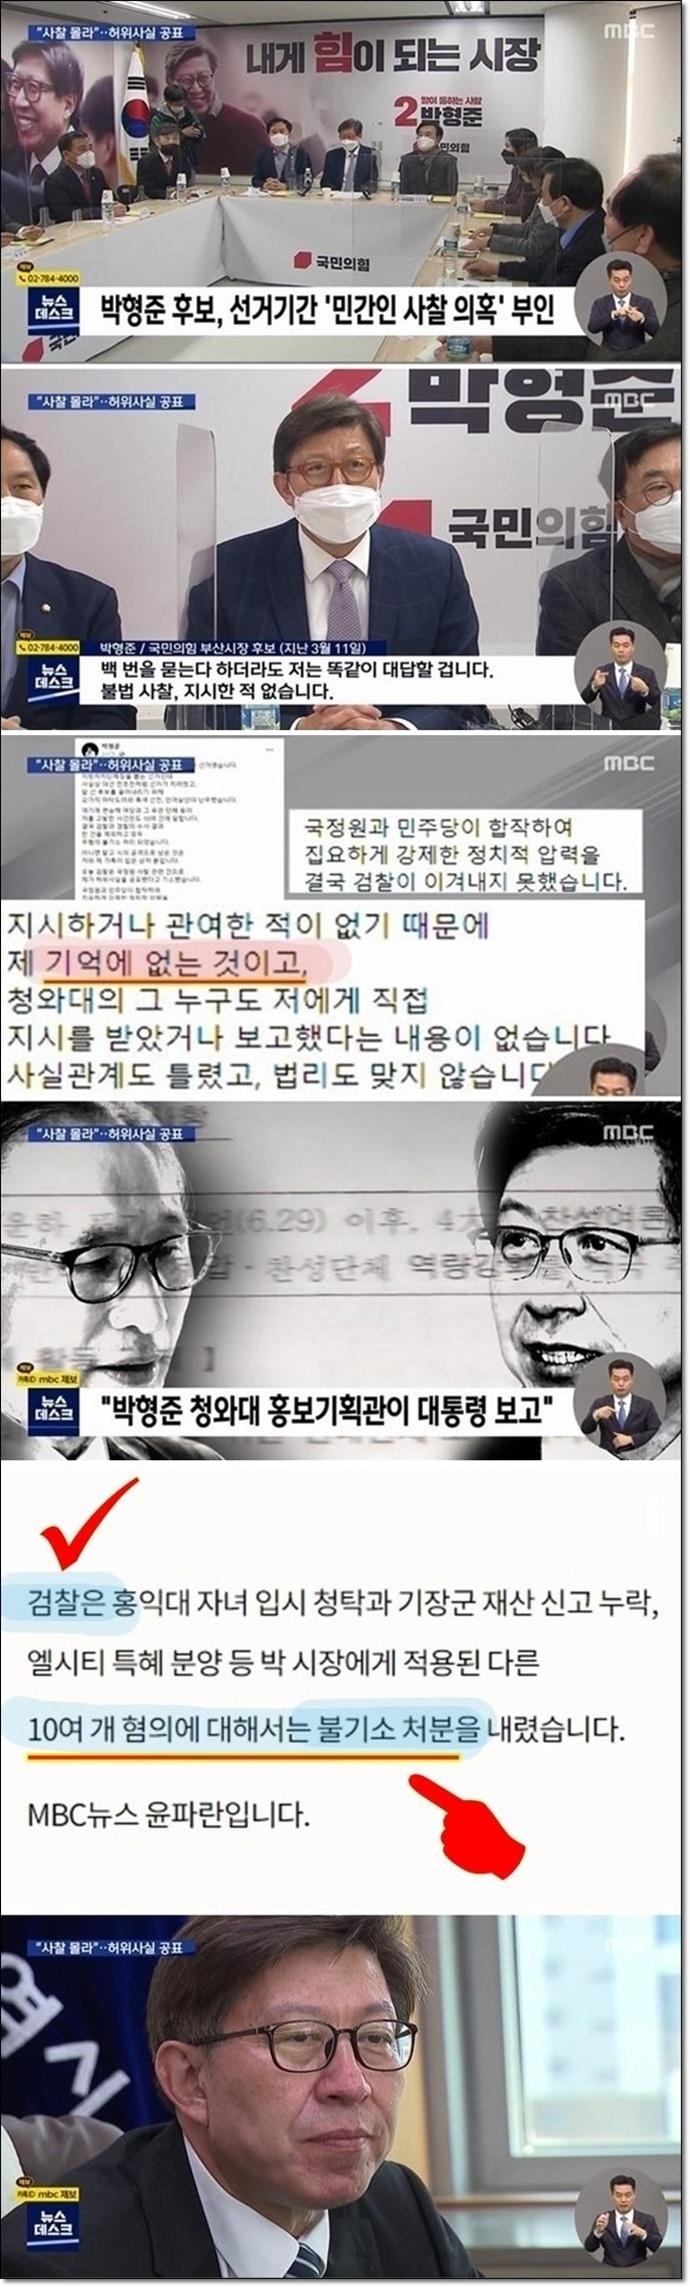 박형준 민간인 사찰 부인, 검찰 10개 혐의 불기소1.jpg